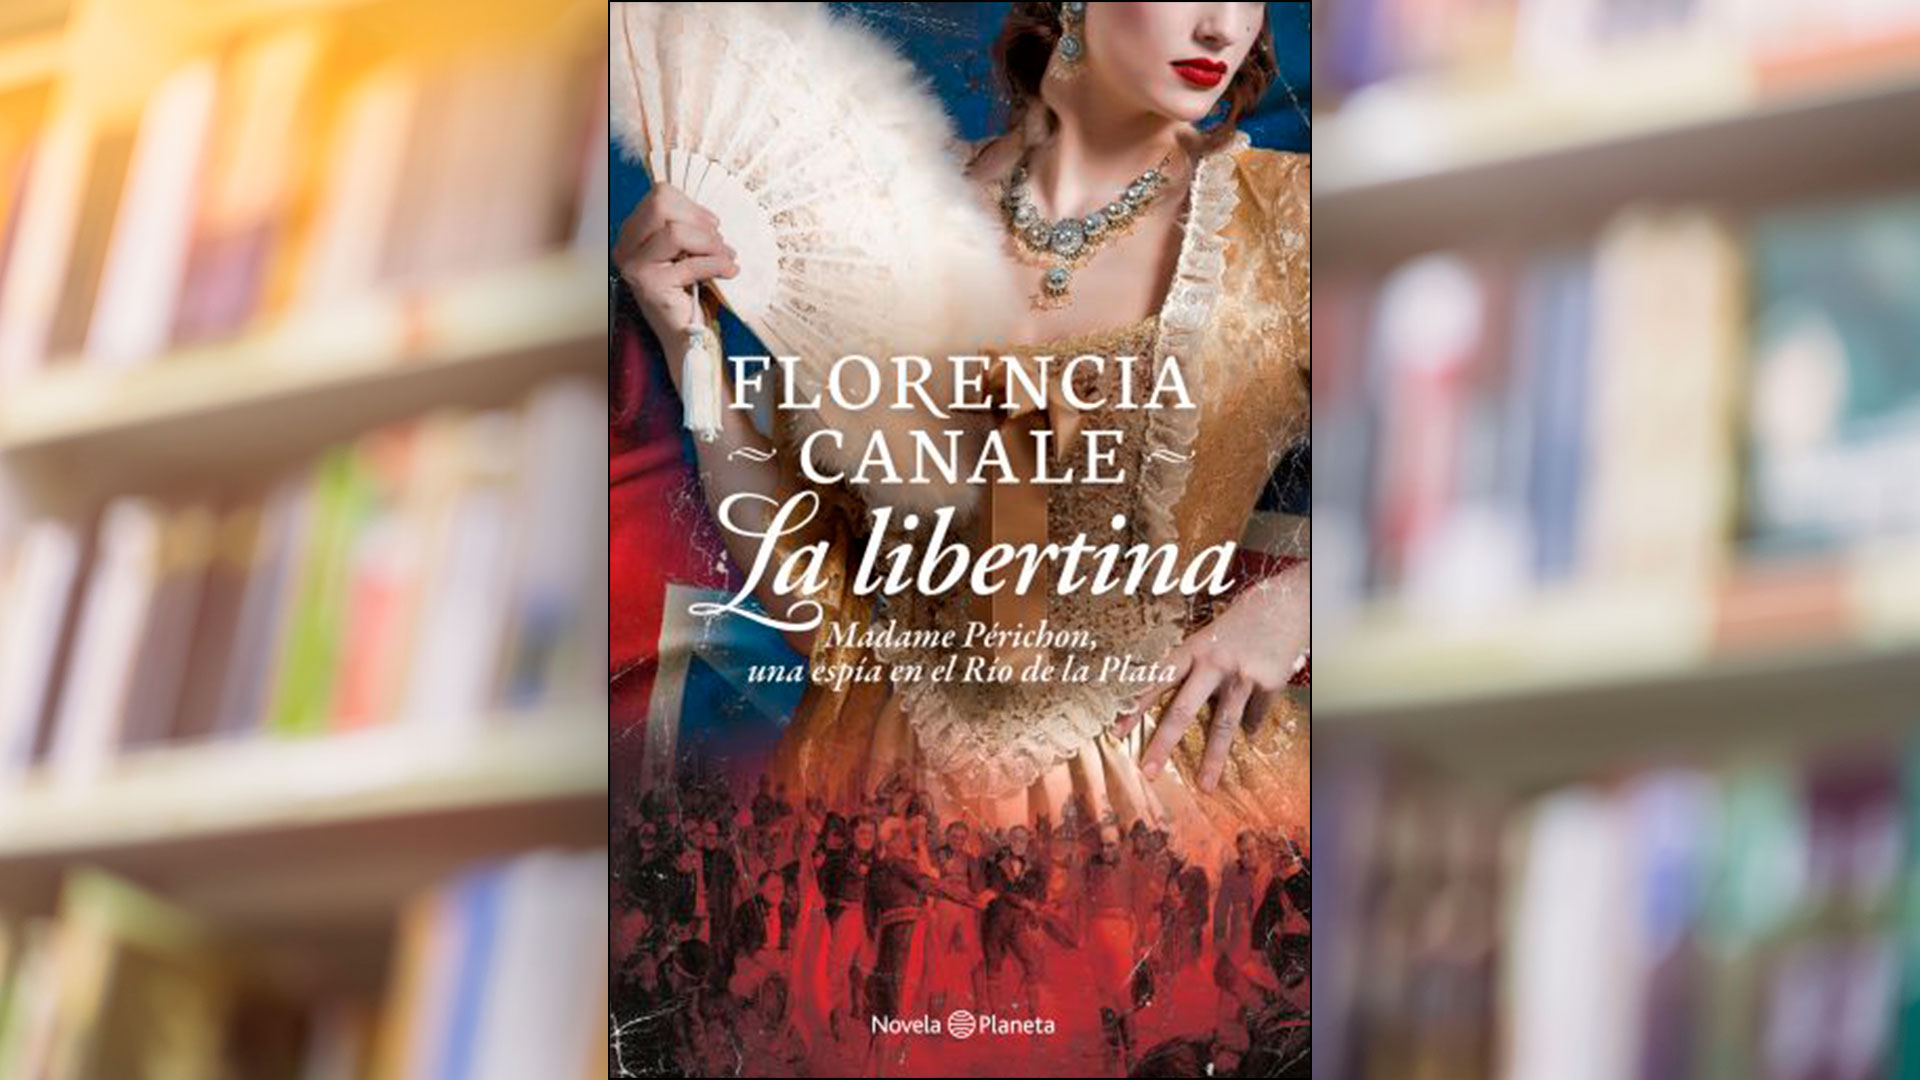 Florencia Canale y una historia “Libertina” en Verano Planeta 2021